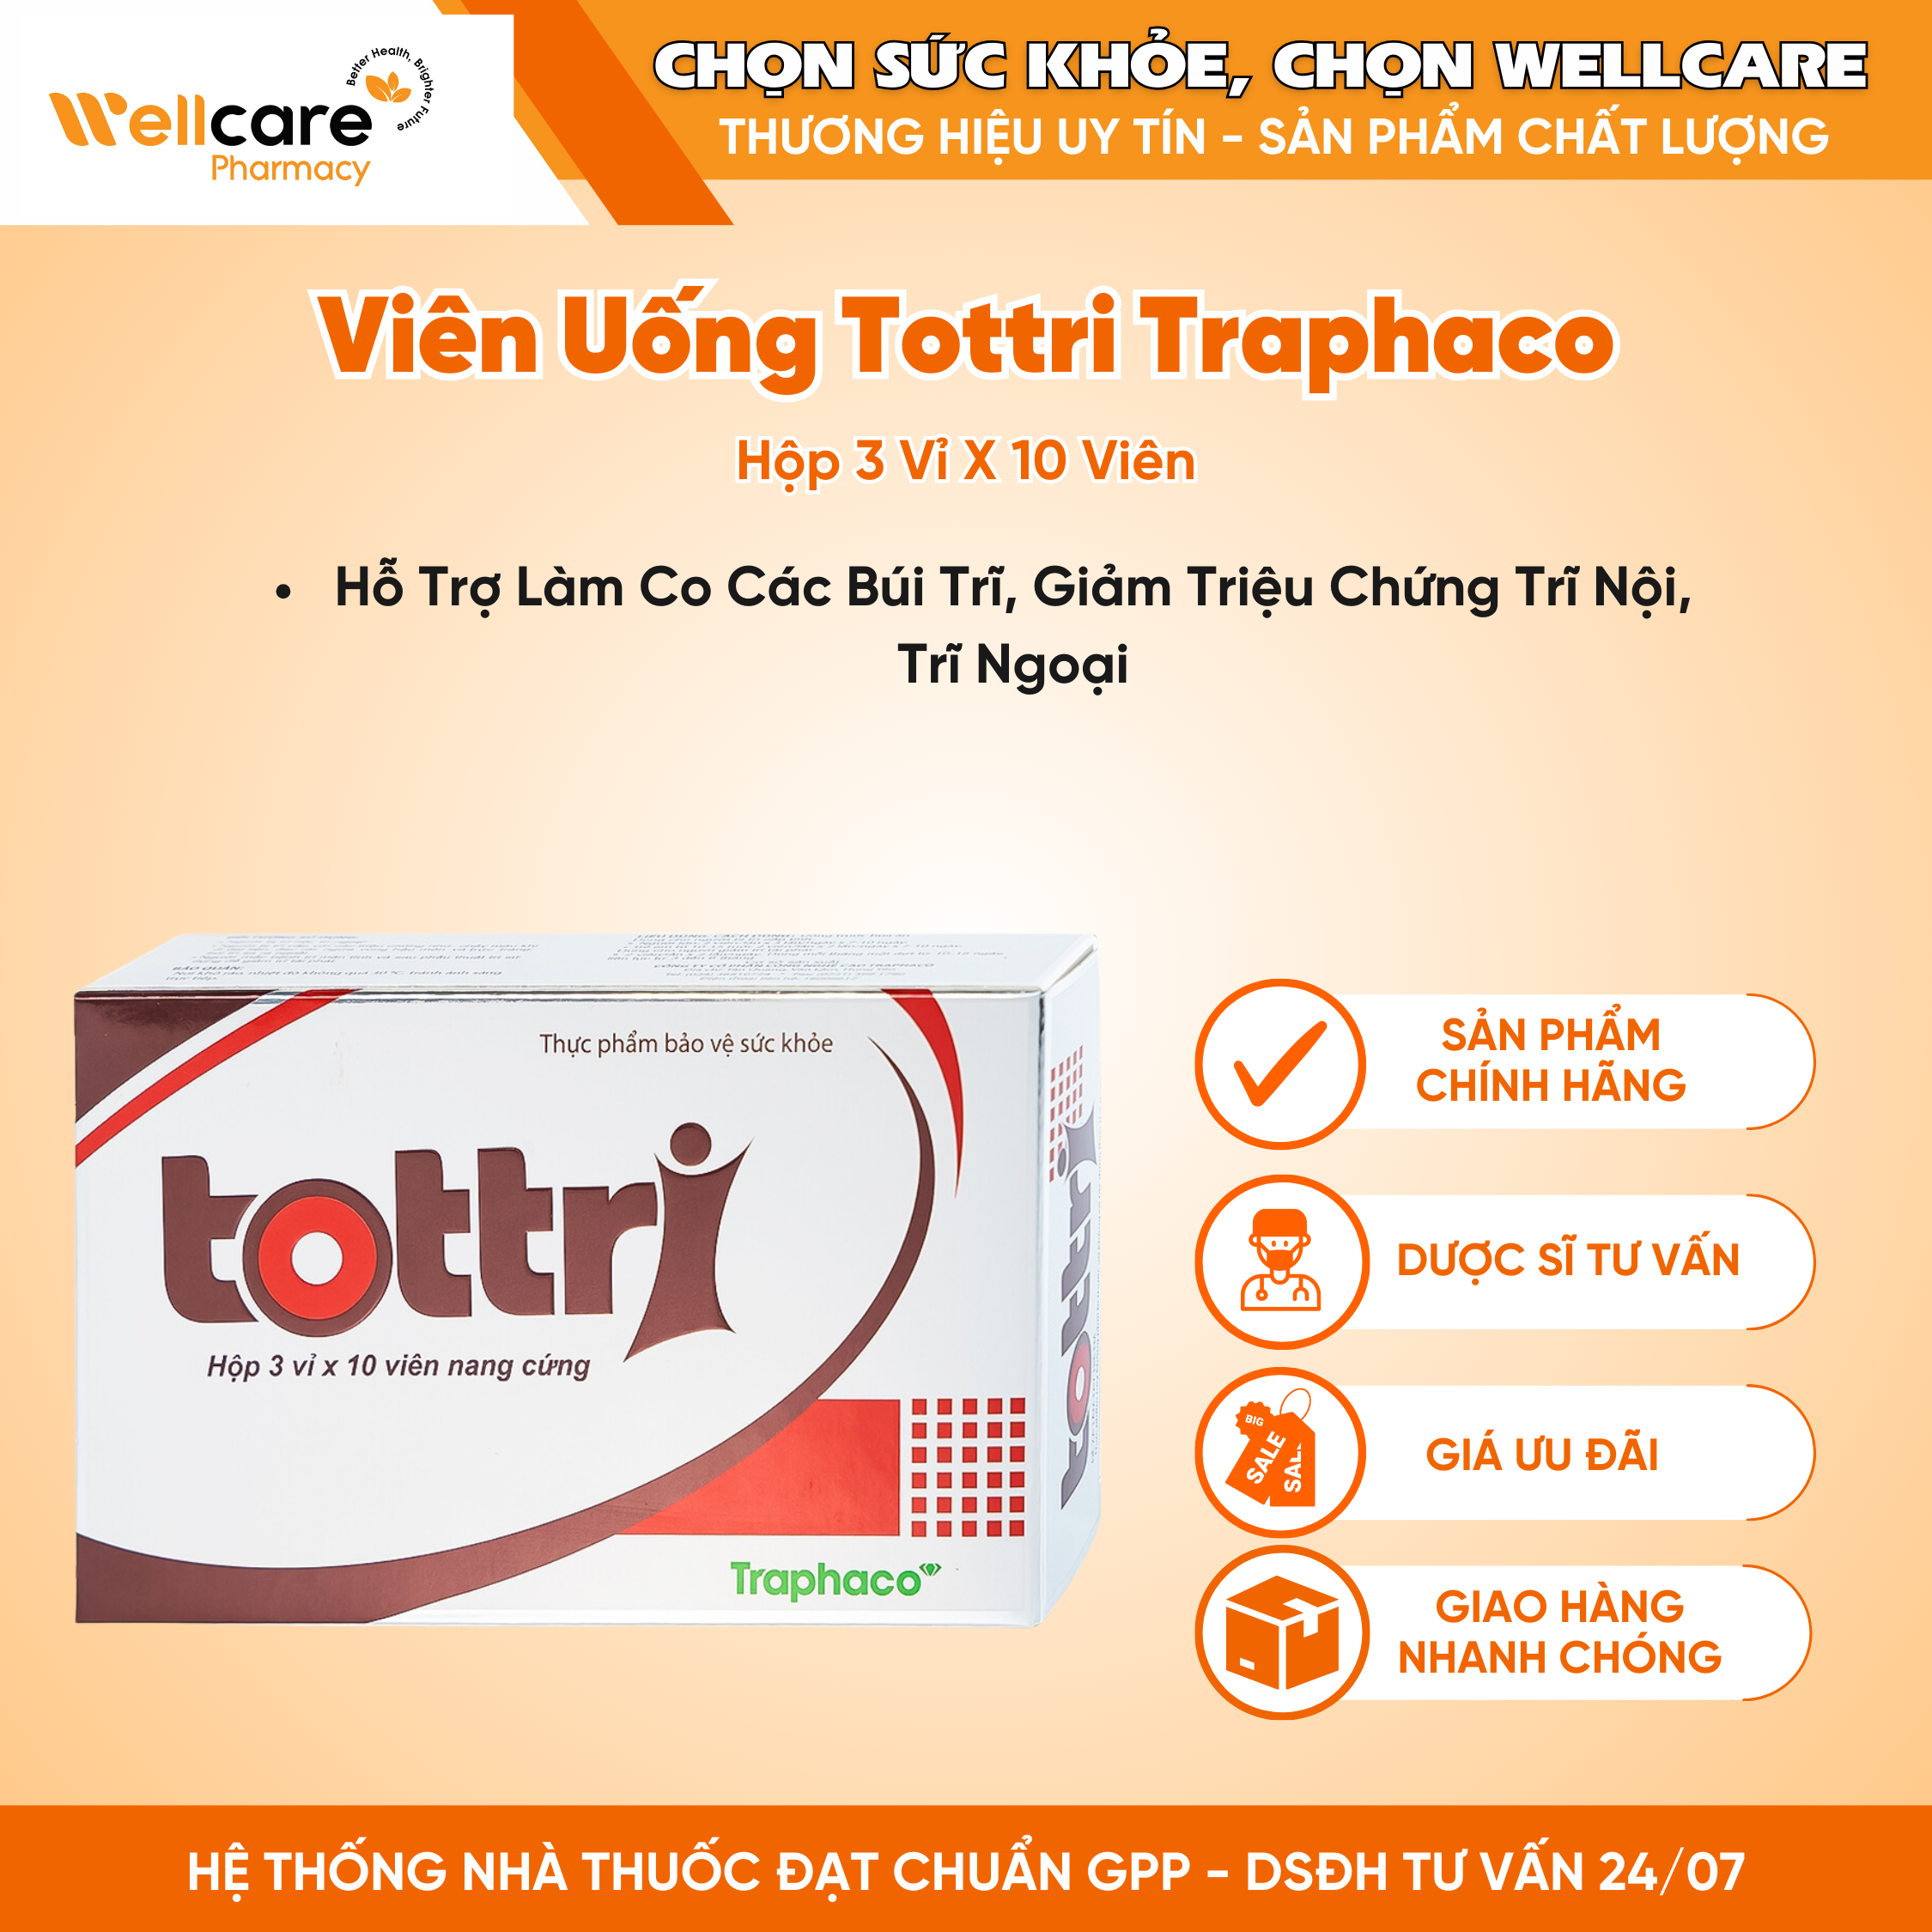 Viên uống Tottri Traphaco – Hỗ trợ làm co các búi trĩ, giảm triệu chứng trĩ nội, trĩ ngoại (Hộp 3 vỉ x 10 viên)